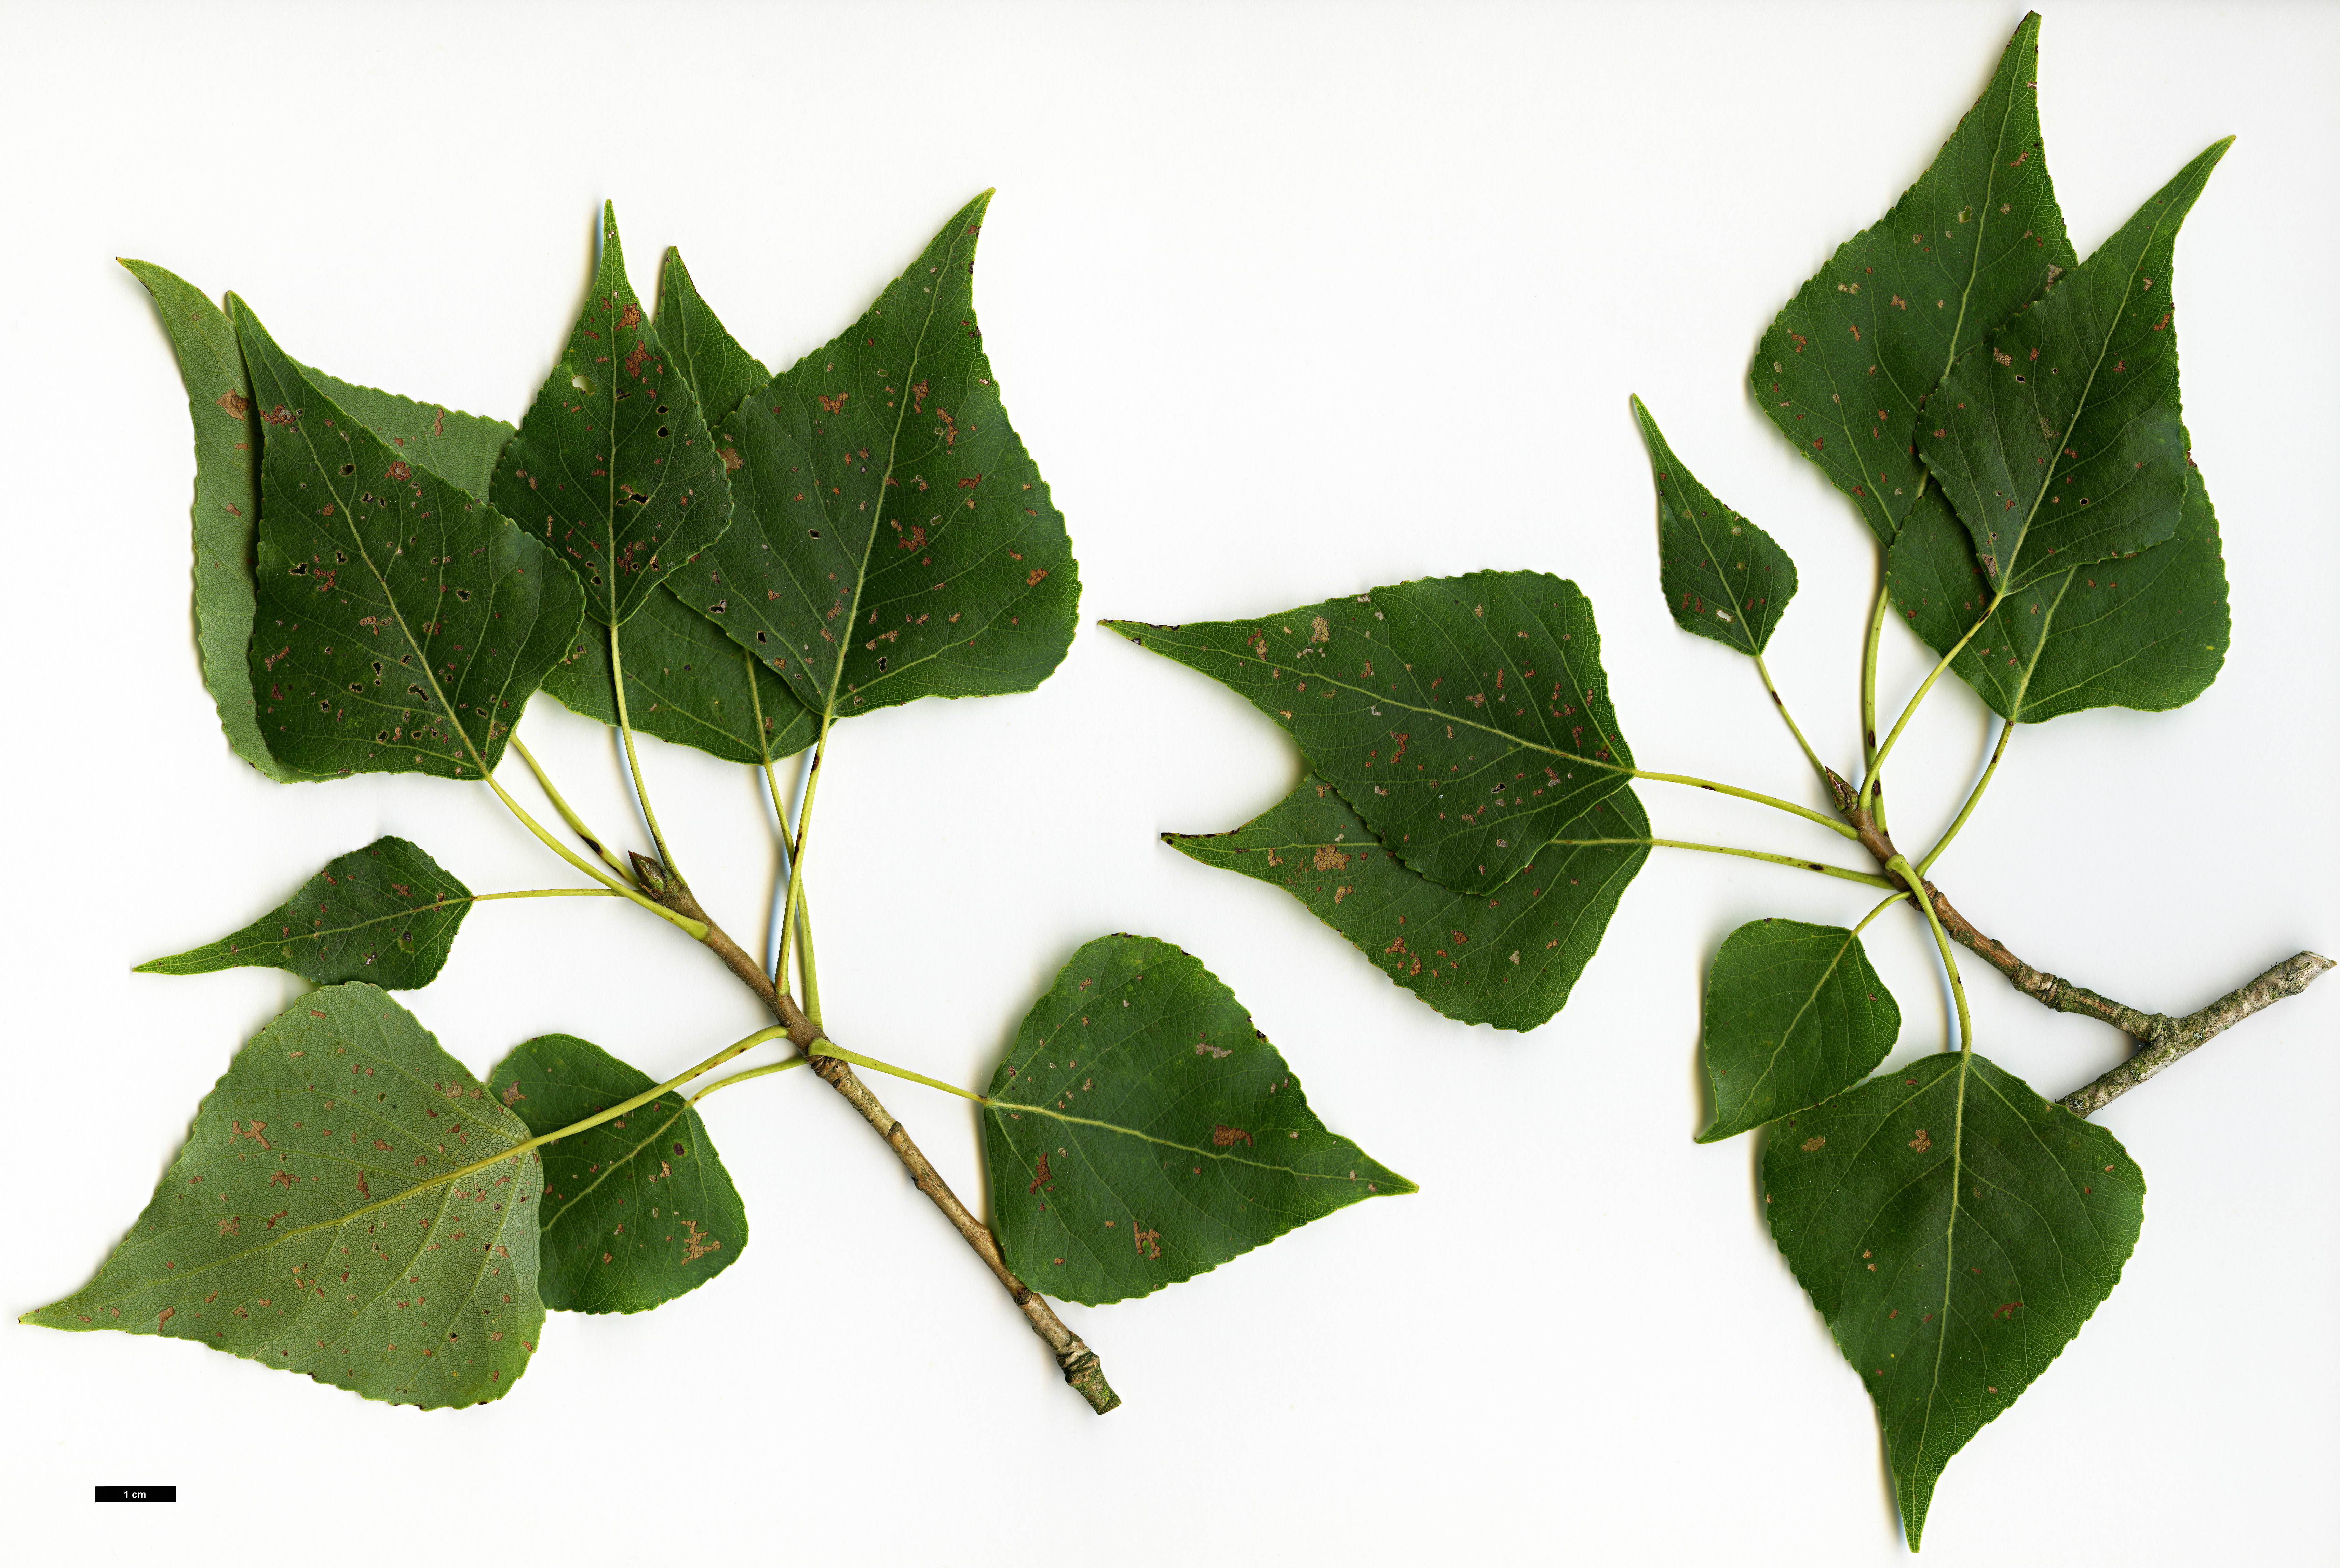 High resolution image: Family: Salicaceae - Genus: Populus - Taxon: nigra - SpeciesSub: subsp. betulifolia